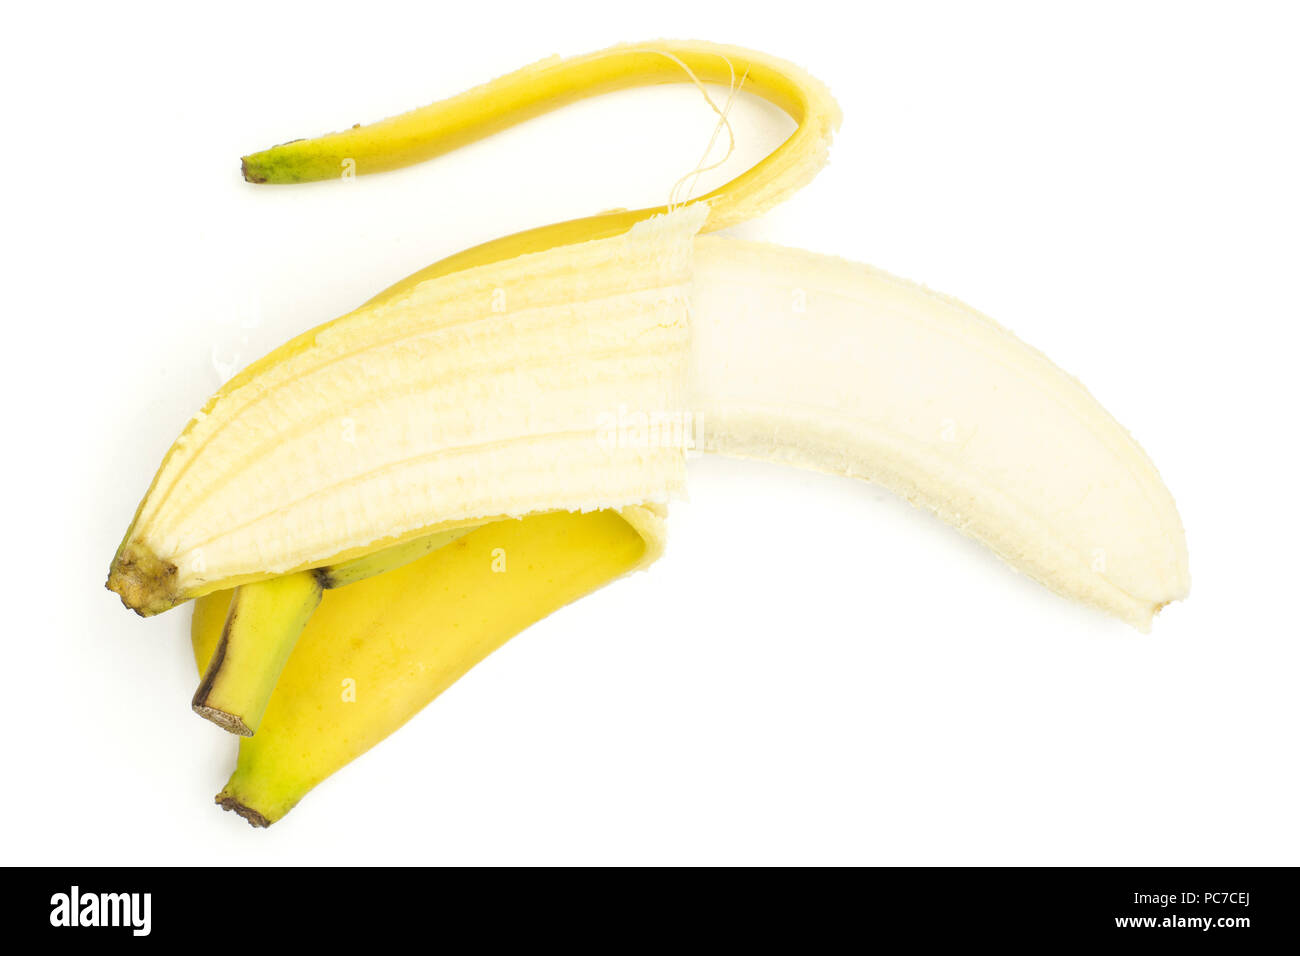 One whole opened fresh yellow banana flatlay isolated on white background Stock Photo